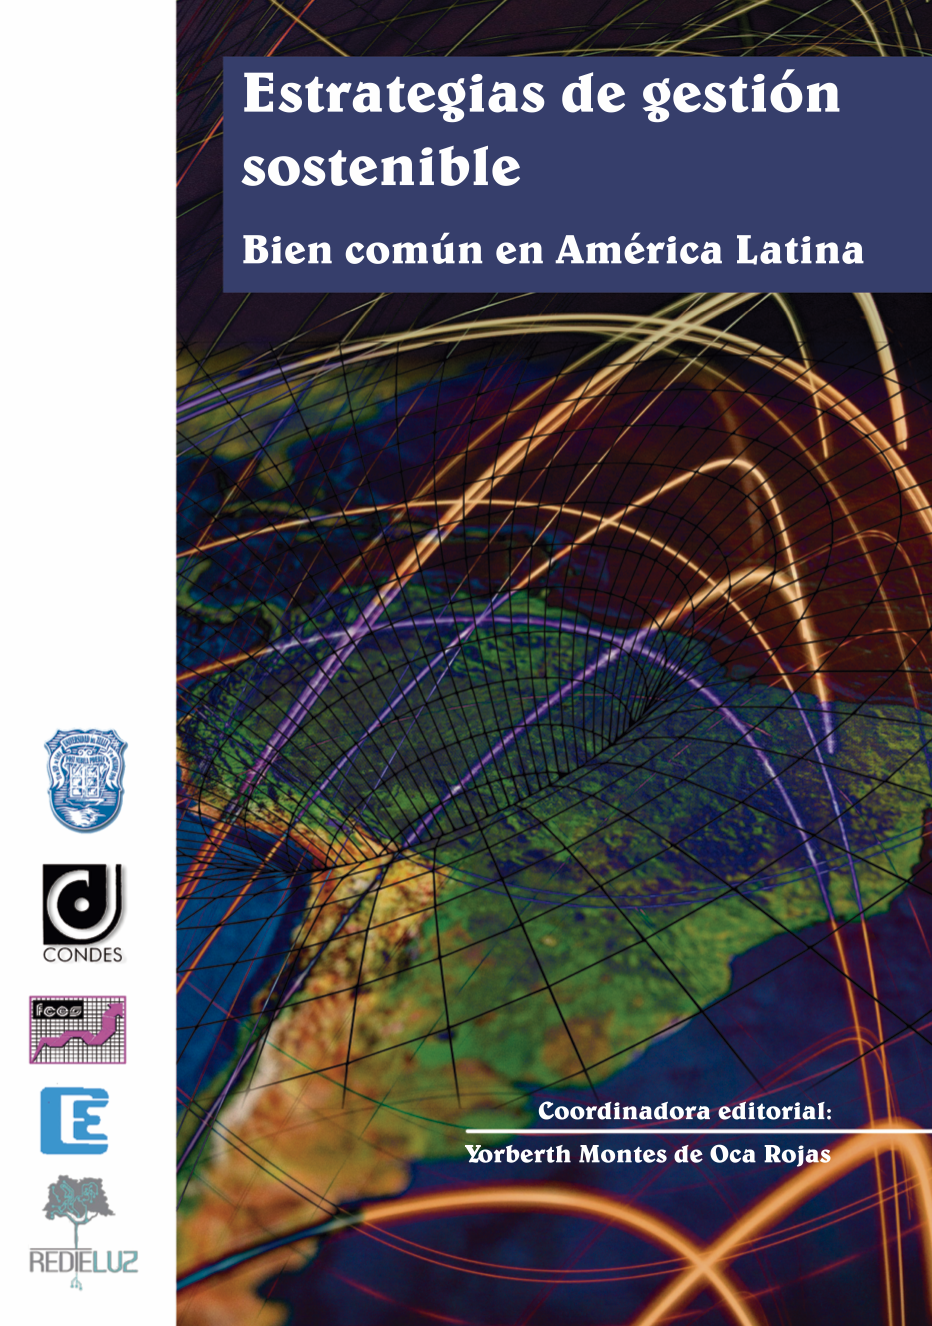 Imagen de portada del libro Estrategias de gestión sostenible. Bien común en América Latina